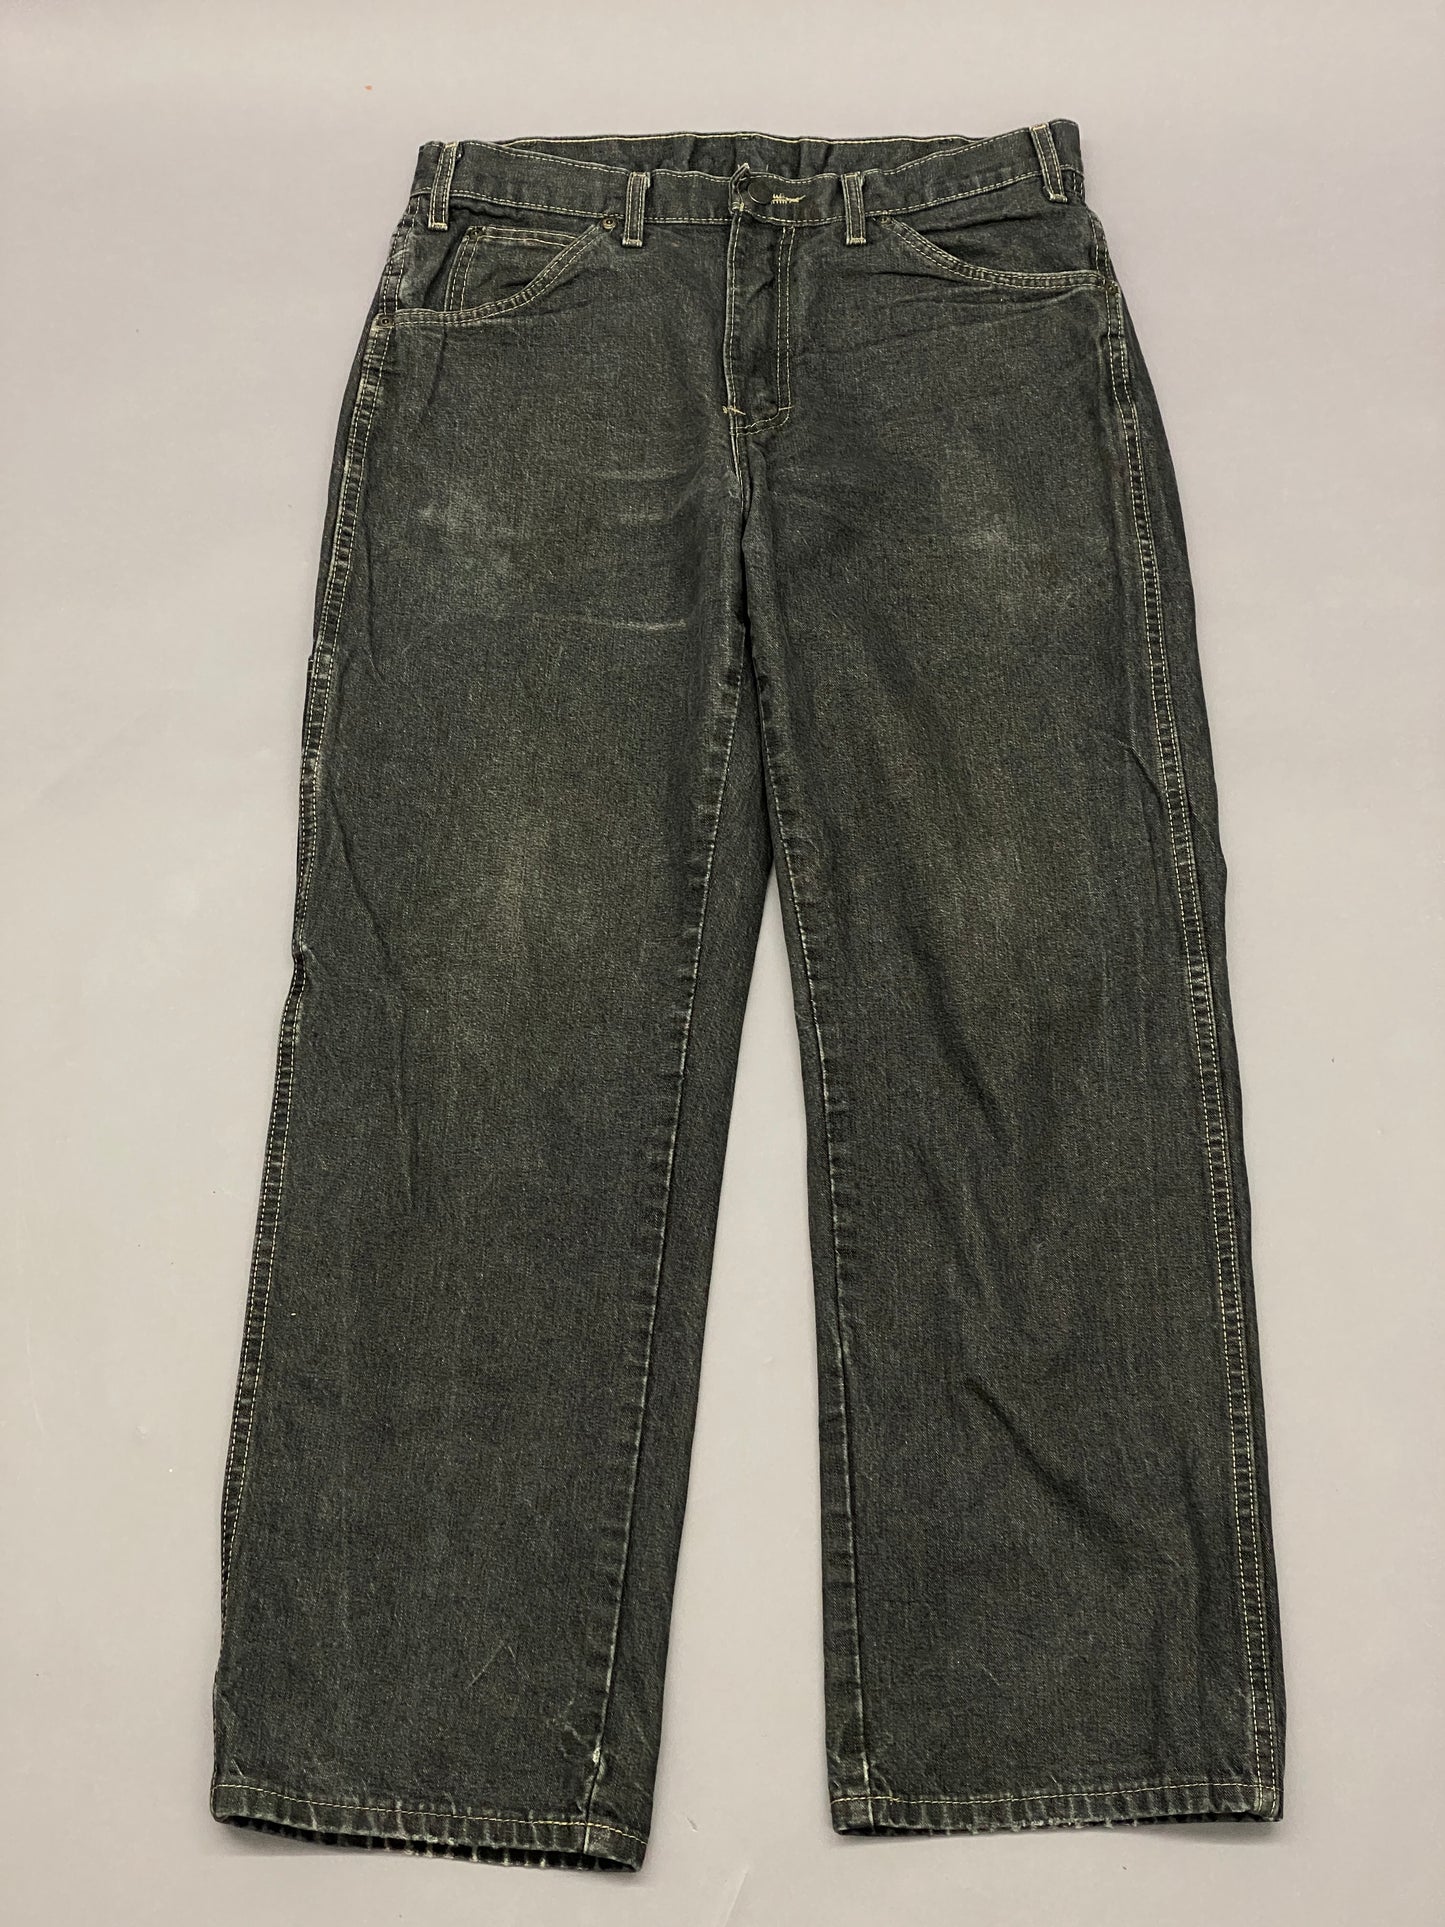 Dickies Carpenter Vintage Jeans - 32 x 30